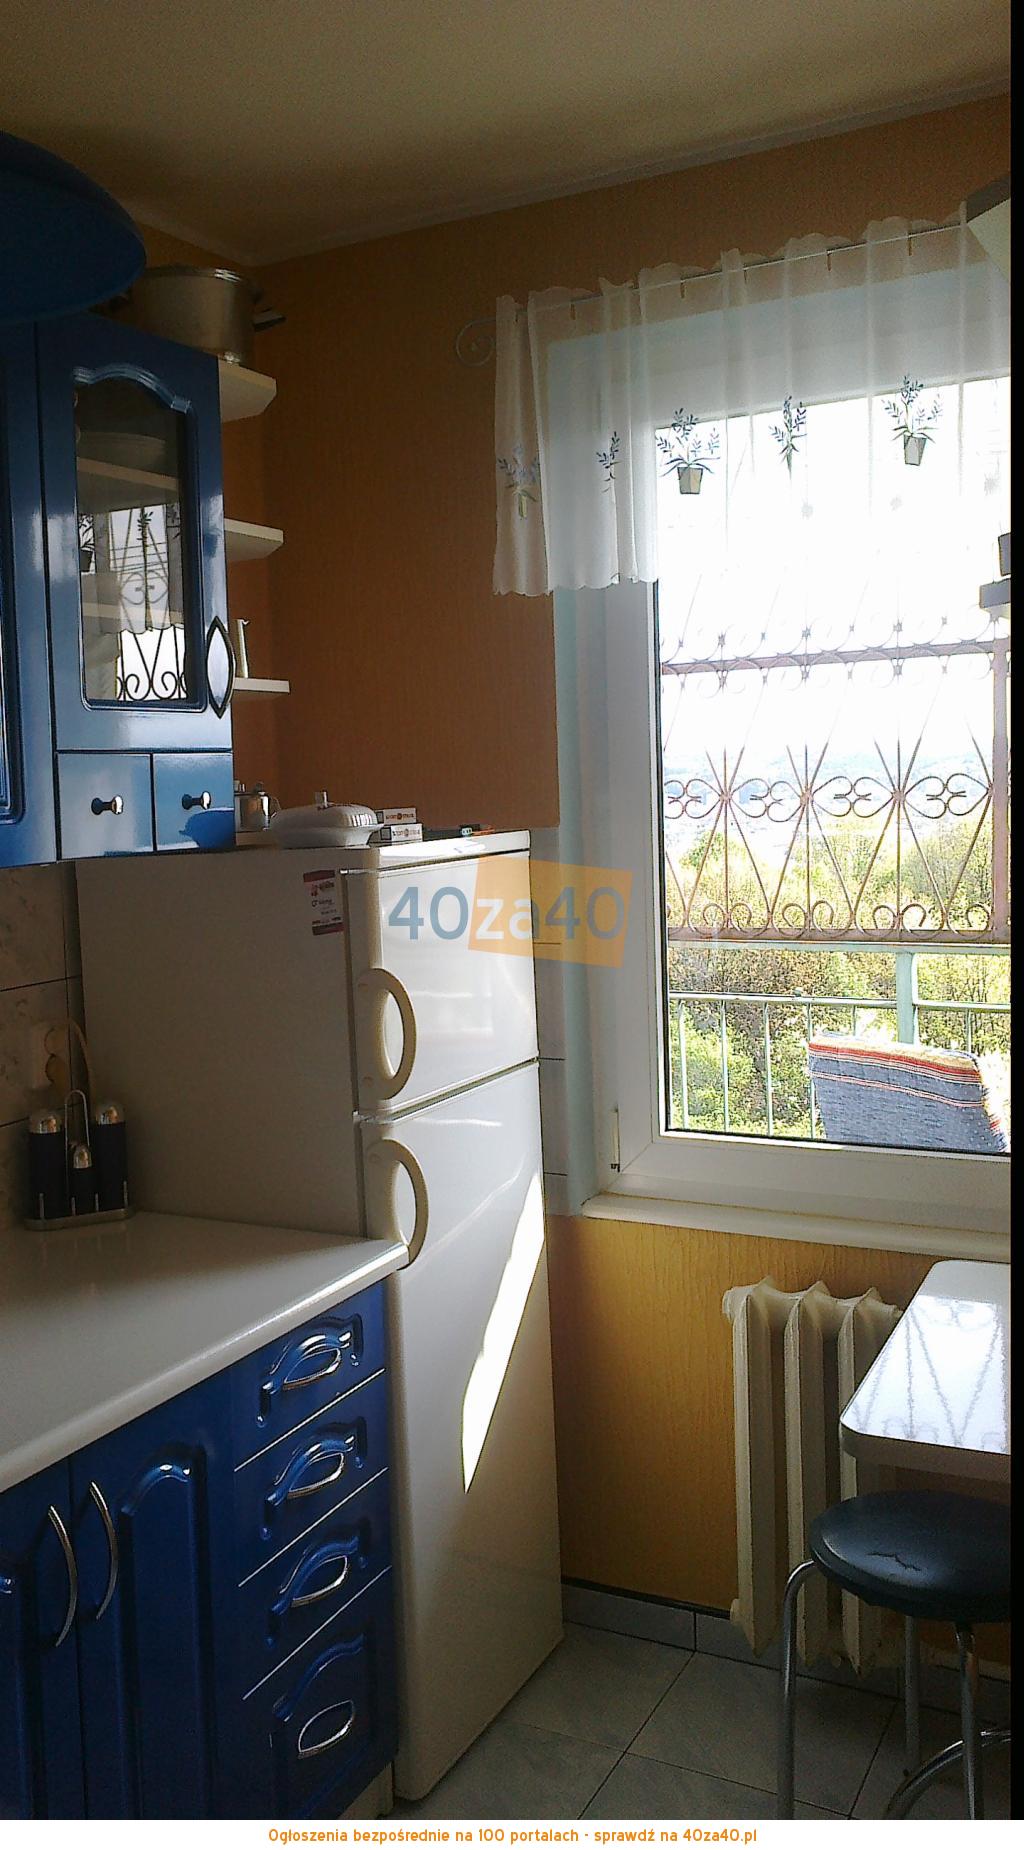 Mieszkanie do wynajęcia, pokoje: 2, cena: 800,00 PLN, Gdynia, kontakt: 0608-310-799